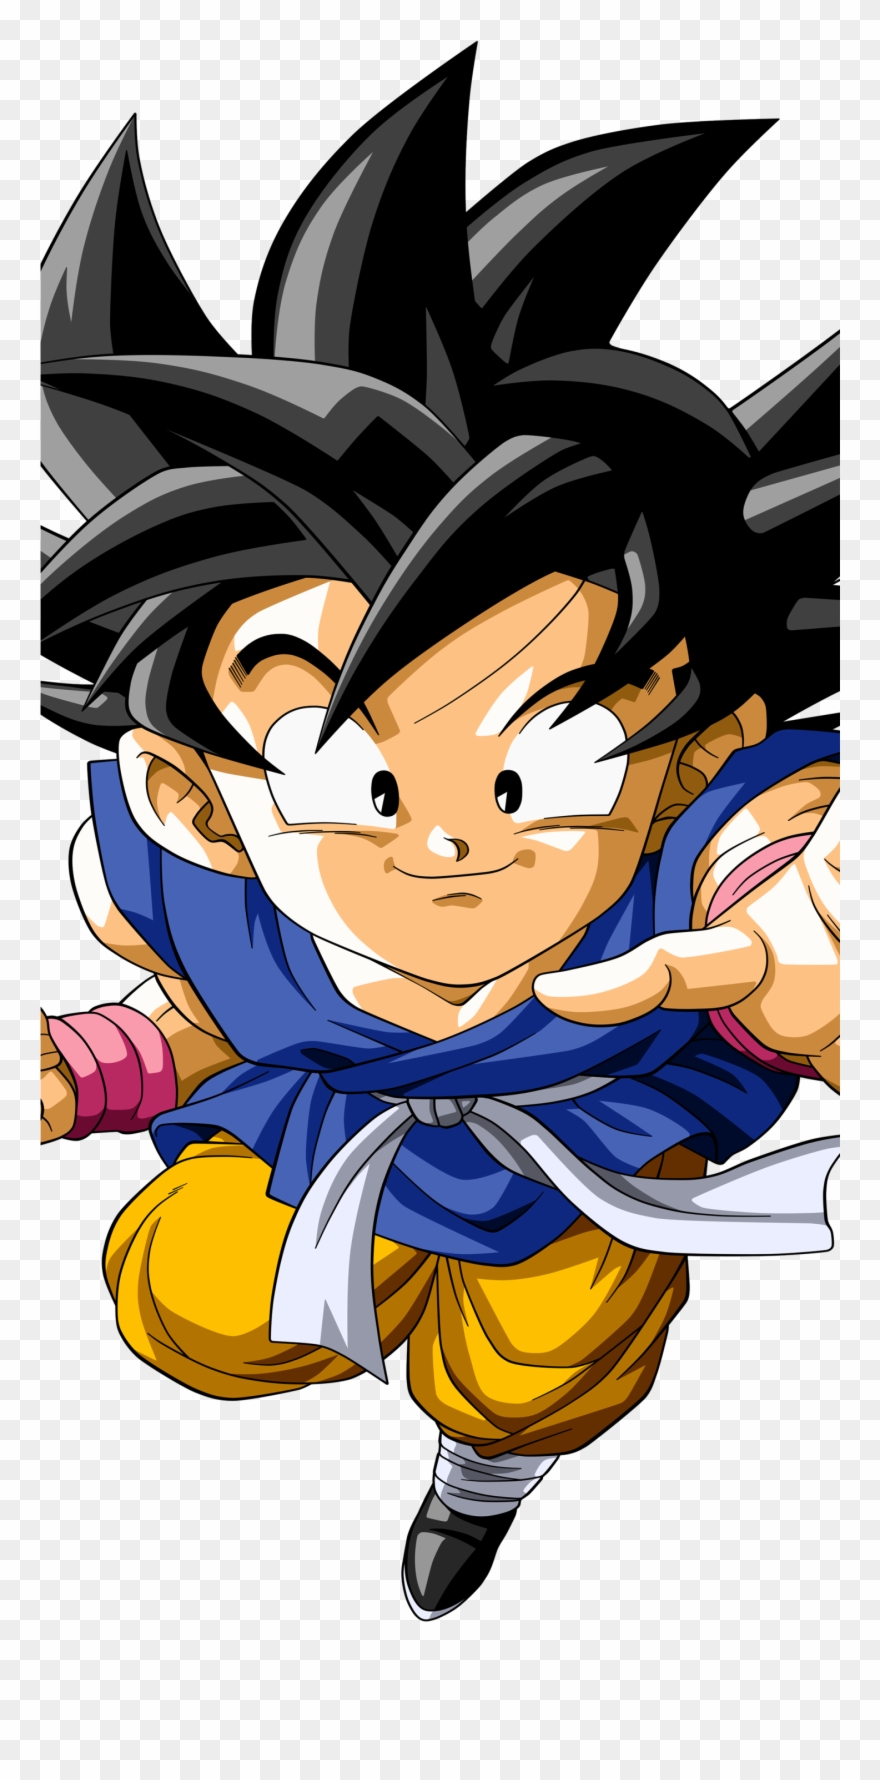 Kid Goku Anime / Dragon Ball Gt Mobile Wallpaper - Dragon Ball Gt Goku Png , HD Wallpaper & Backgrounds